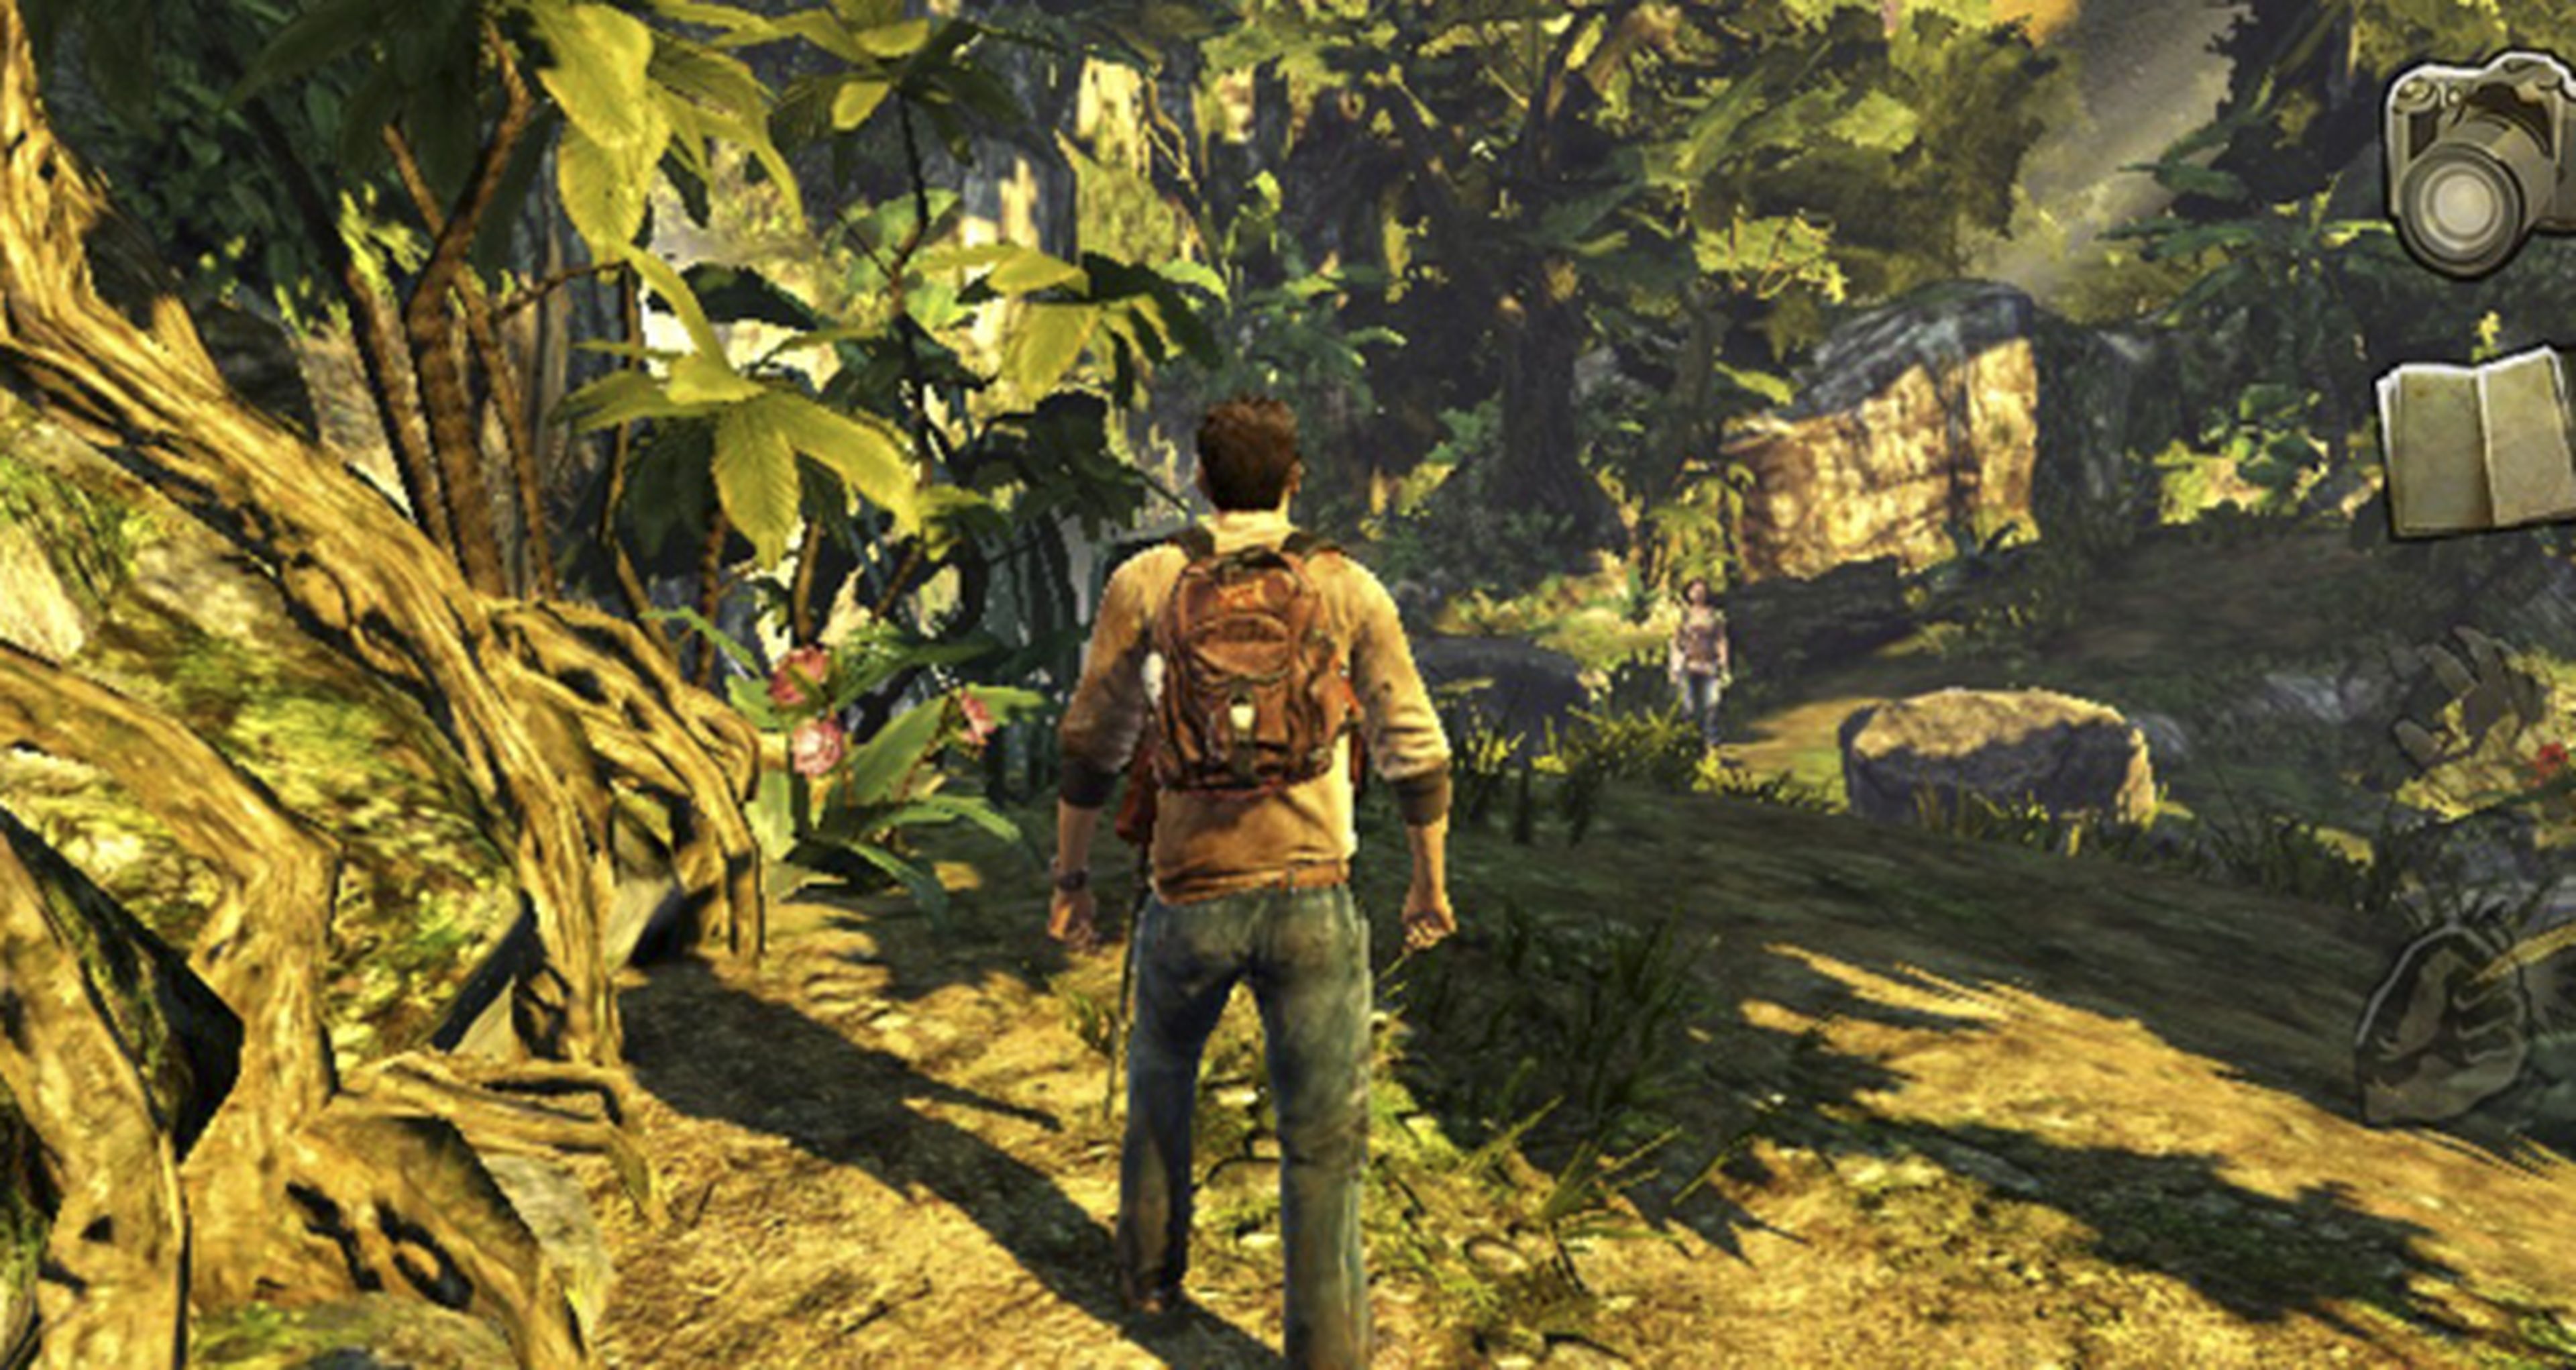 Uncharted: El abismo de oro, Naughty Dog no cierra la puerta a su remasterización